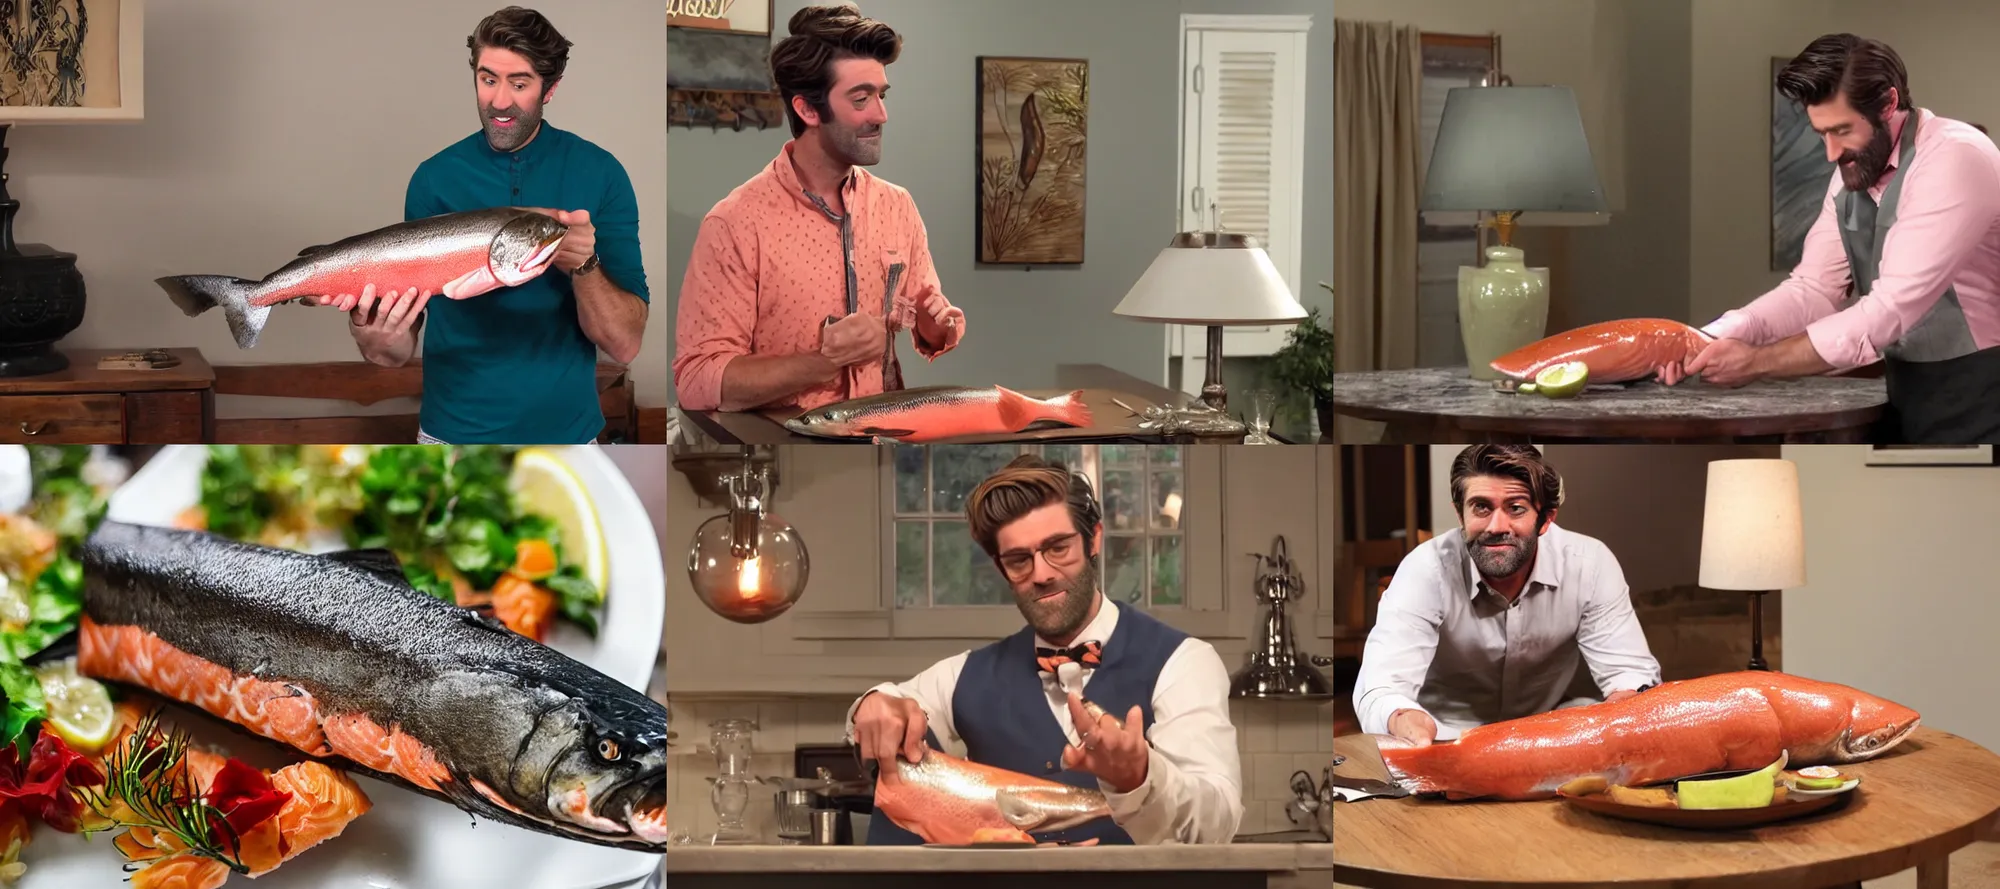 Prompt: rhett puts a salmon in a lamp